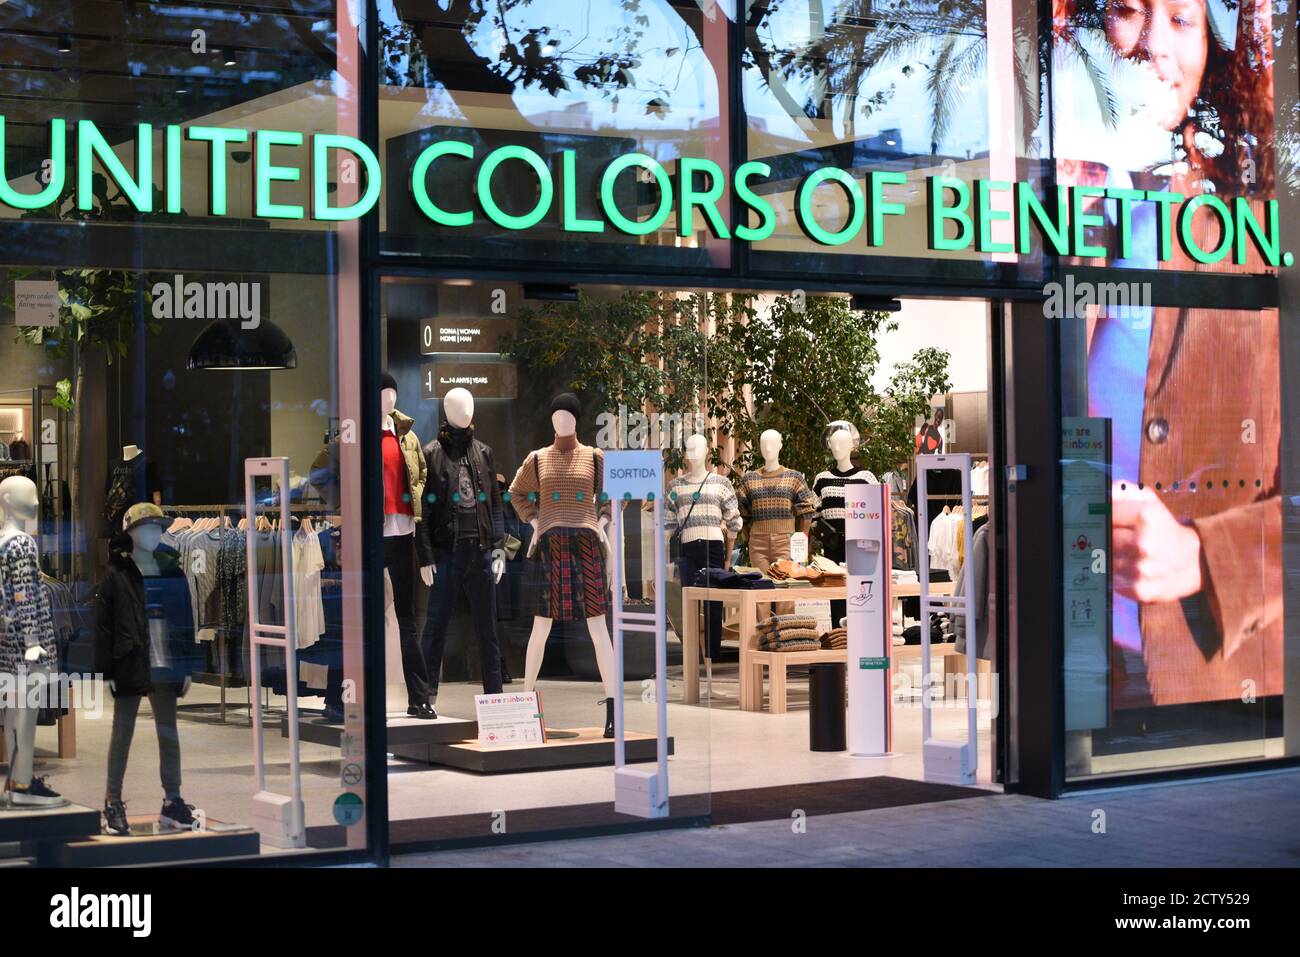 Die Vereinigten Farben von Benetton Logo in einem ihrer Geschäfte gesehen  Stockfotografie - Alamy